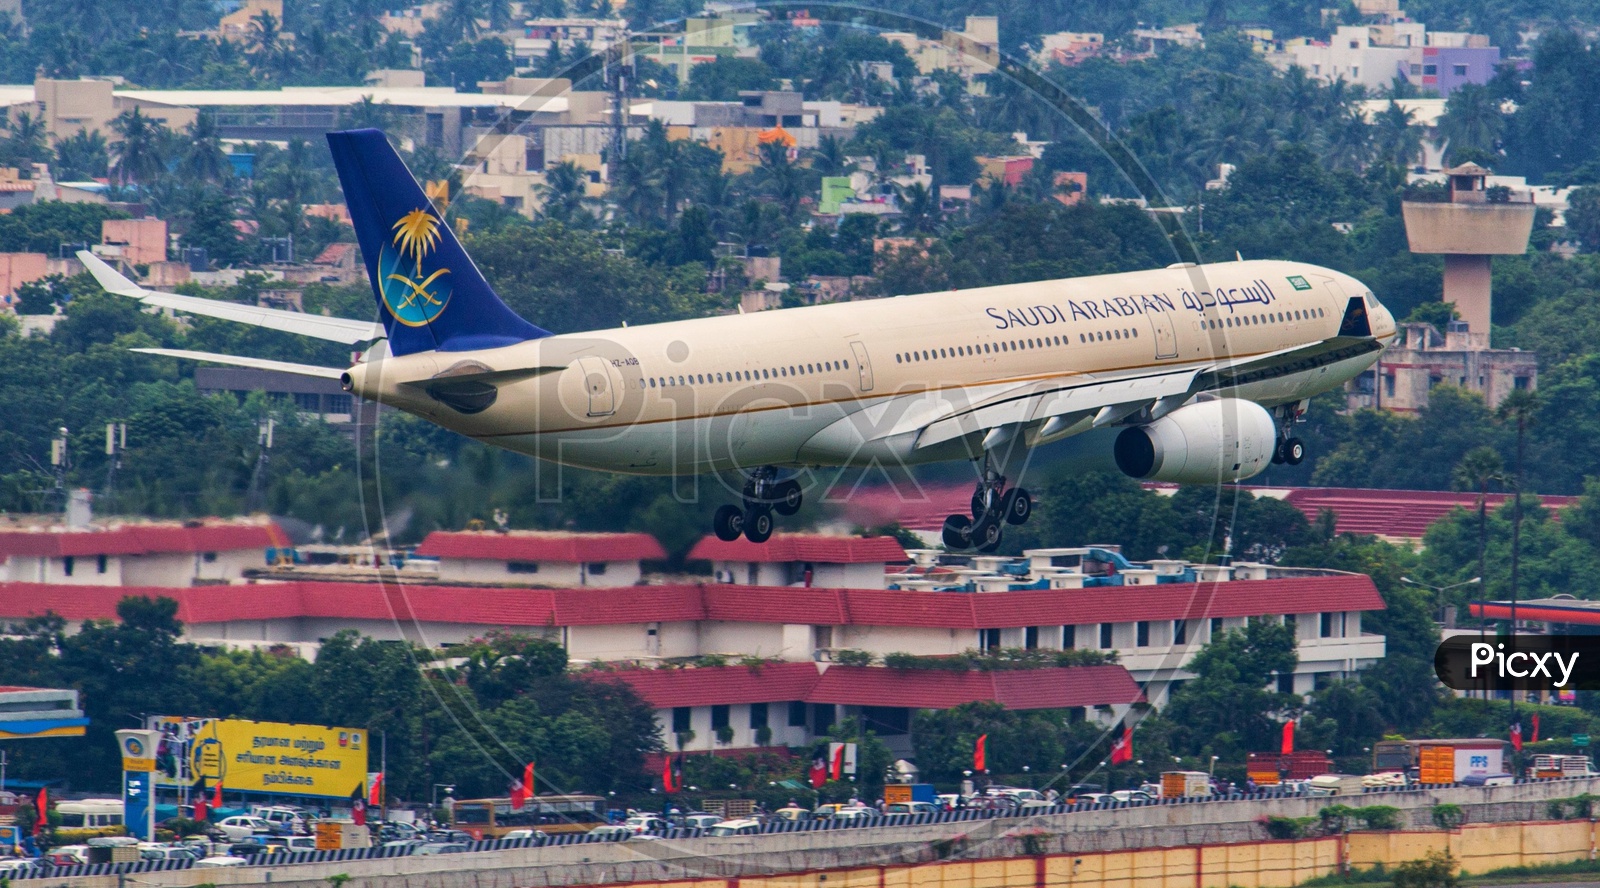 Saudi Arabian Airlines Airbus A330